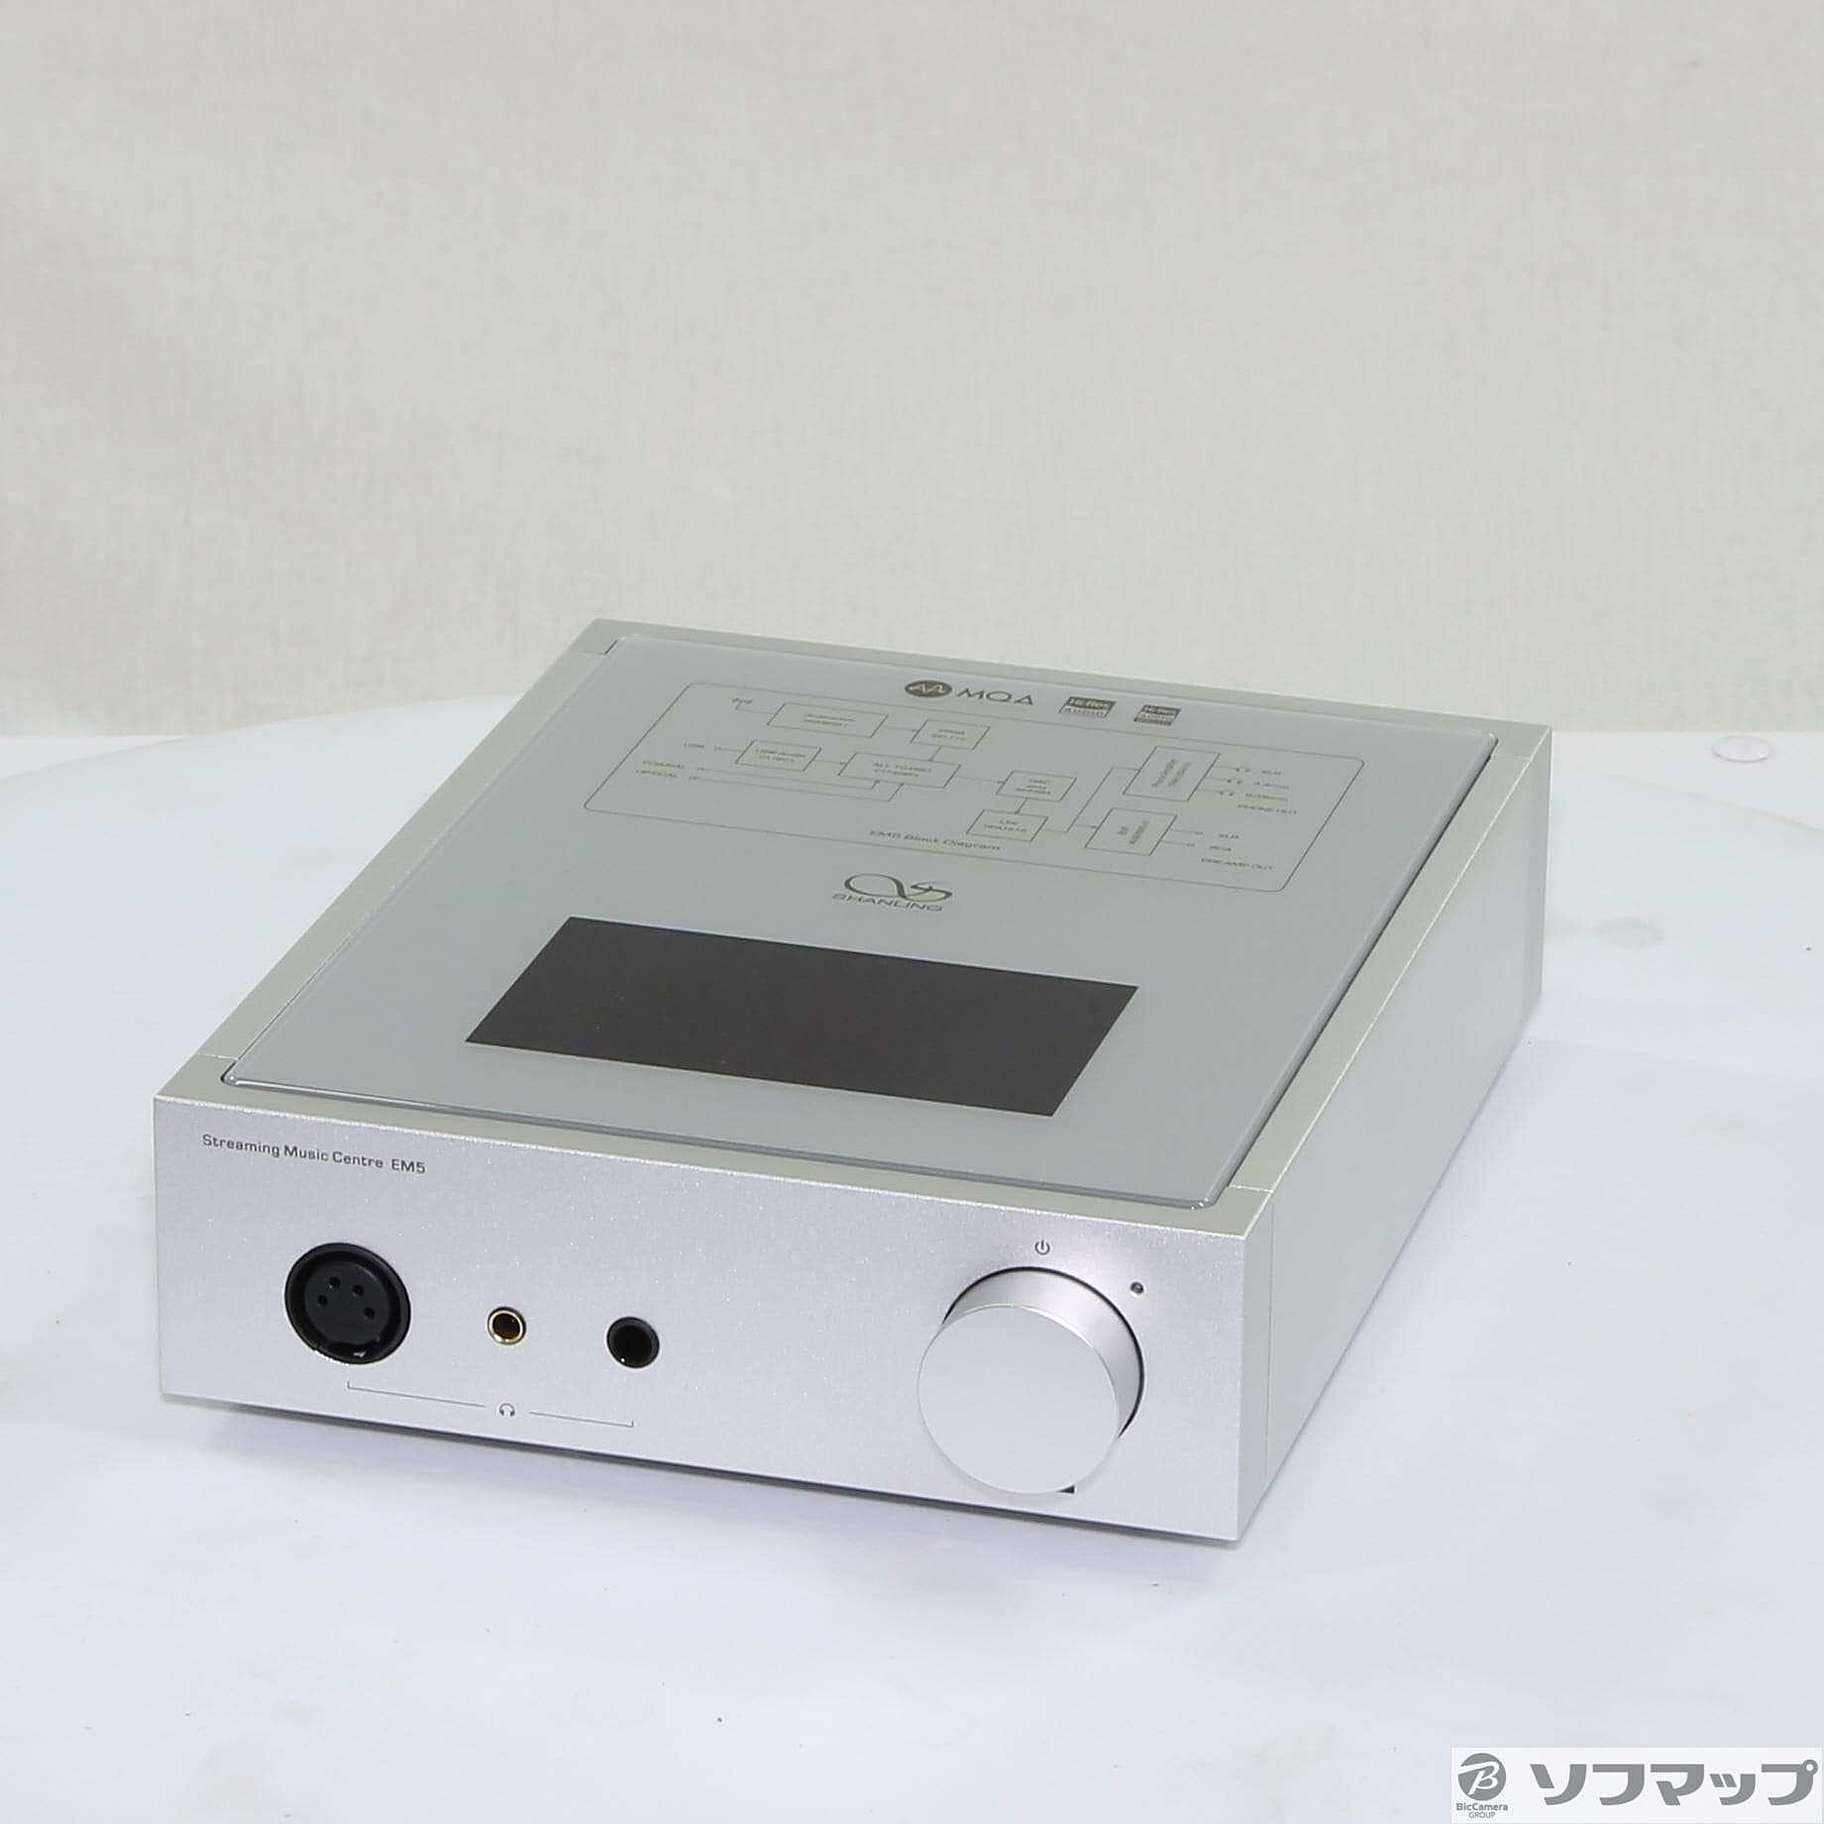 (中古)SHANLING FM5SL microSD シルバー EM5SL(377-ud)